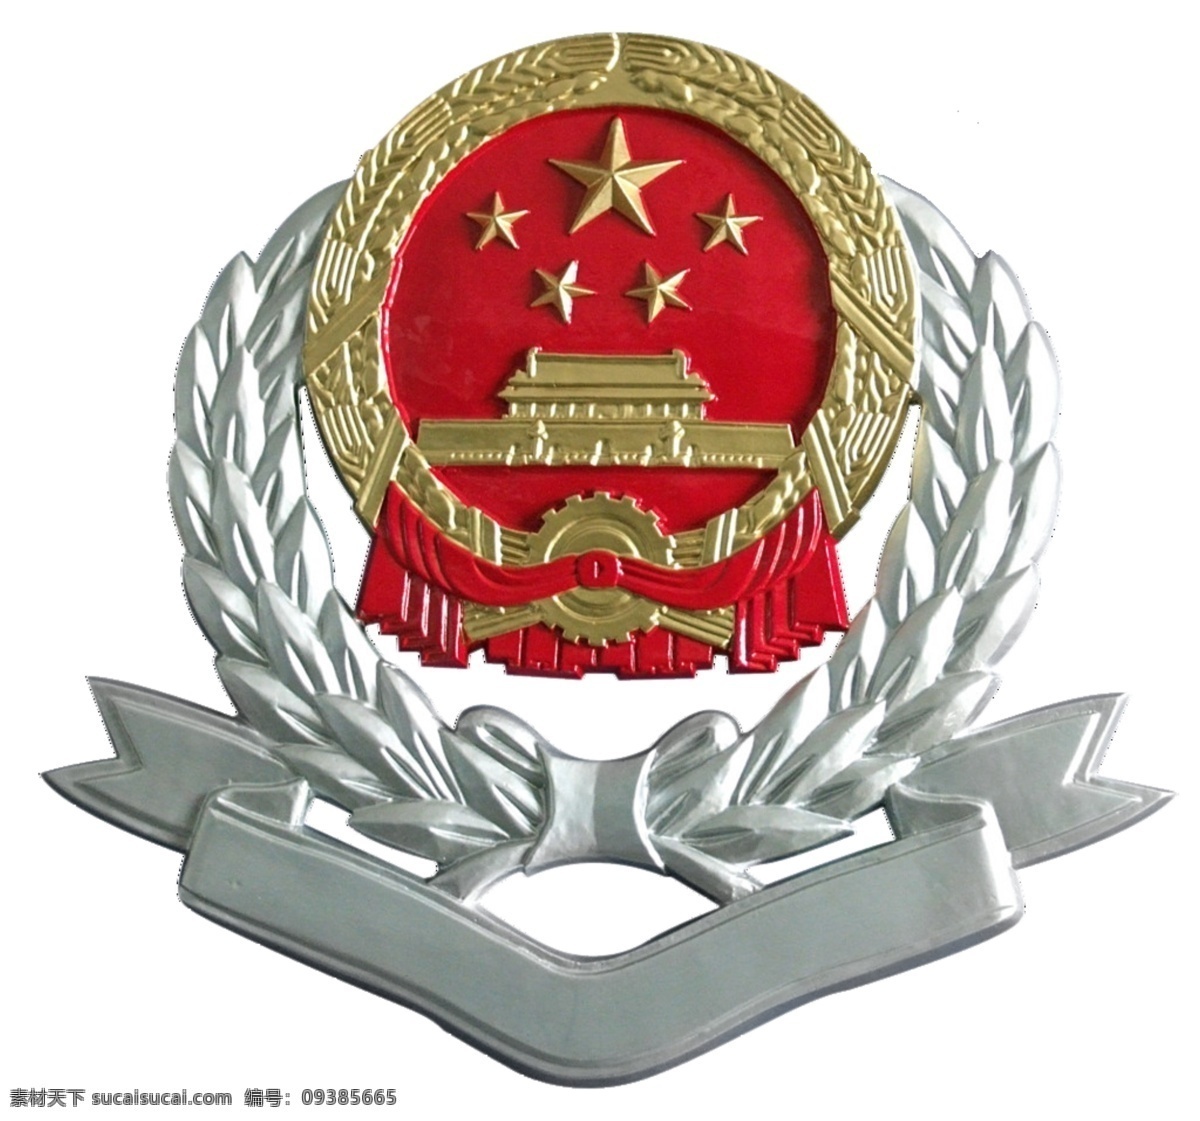 新税徽 国税 地税 标志 税务标志 金 银 红 logo设计